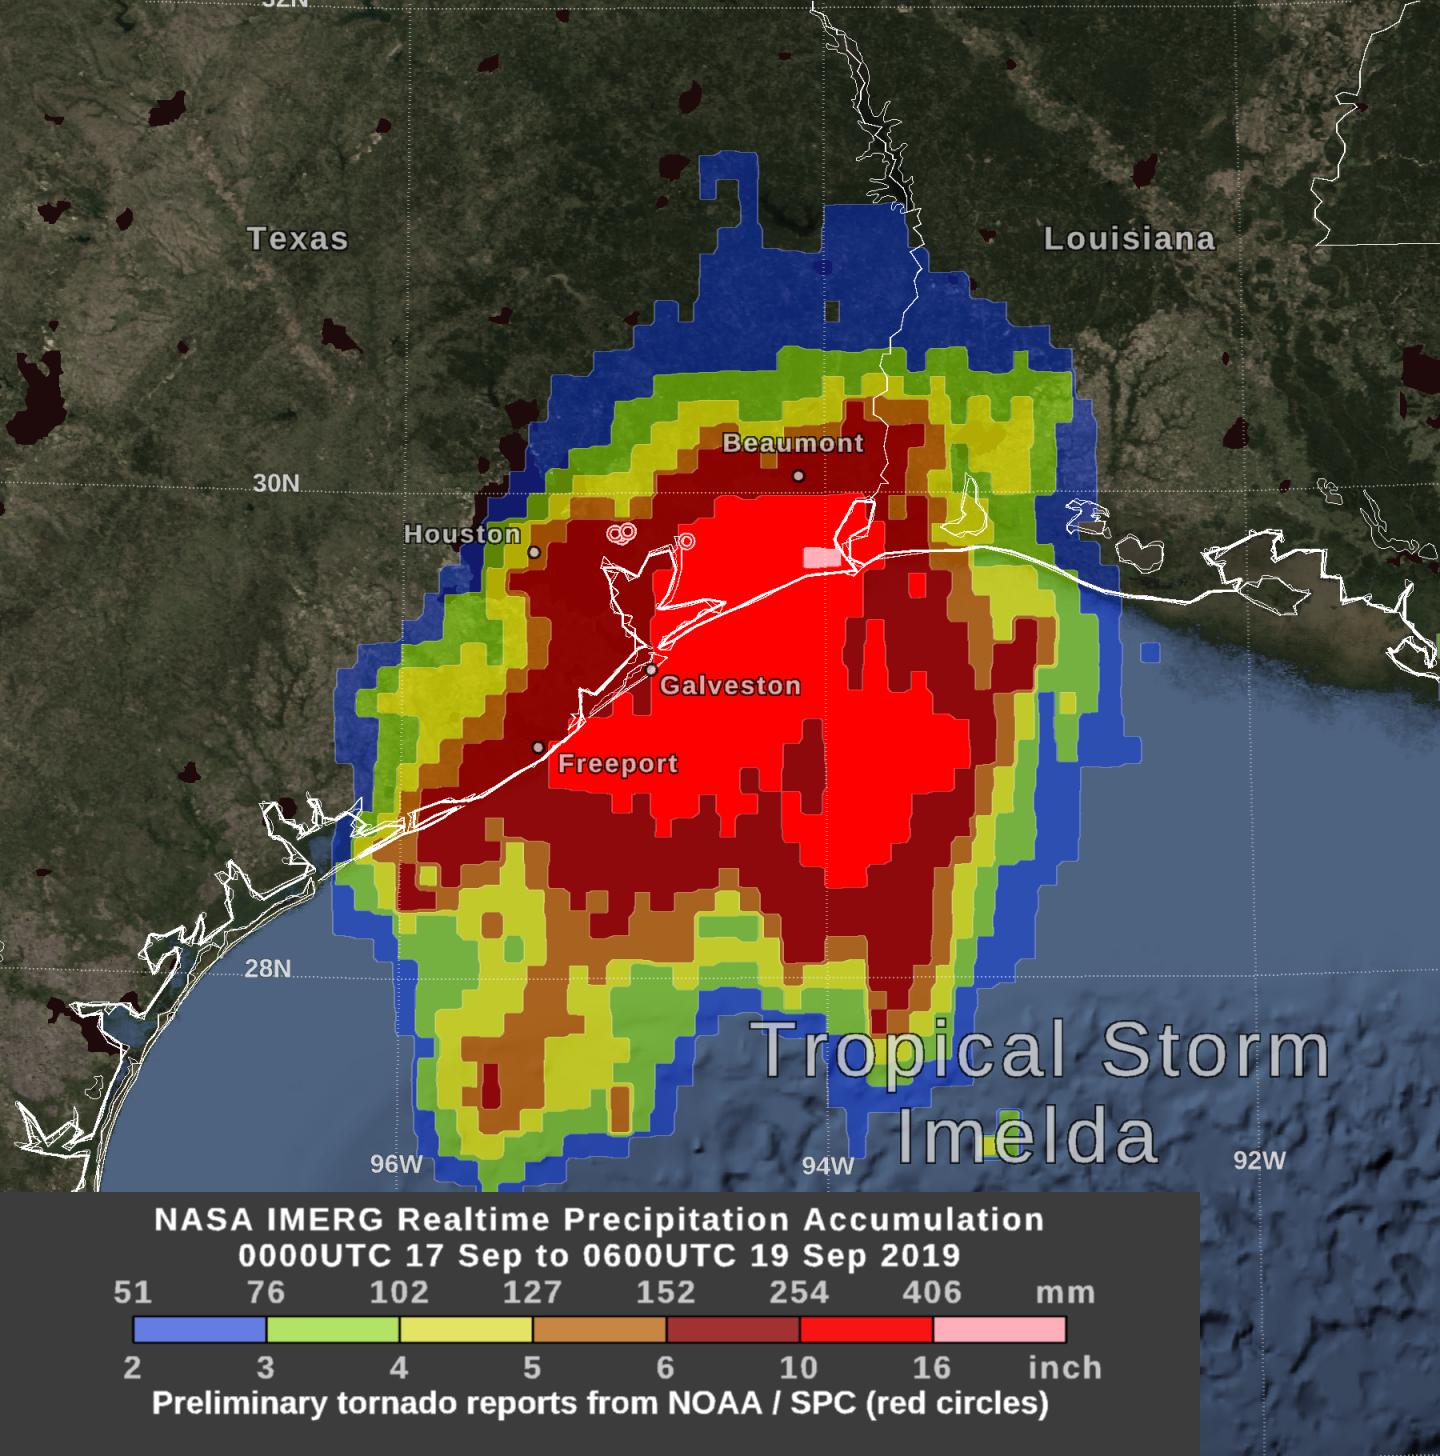 IMERG Data on Rainfall from Imelda